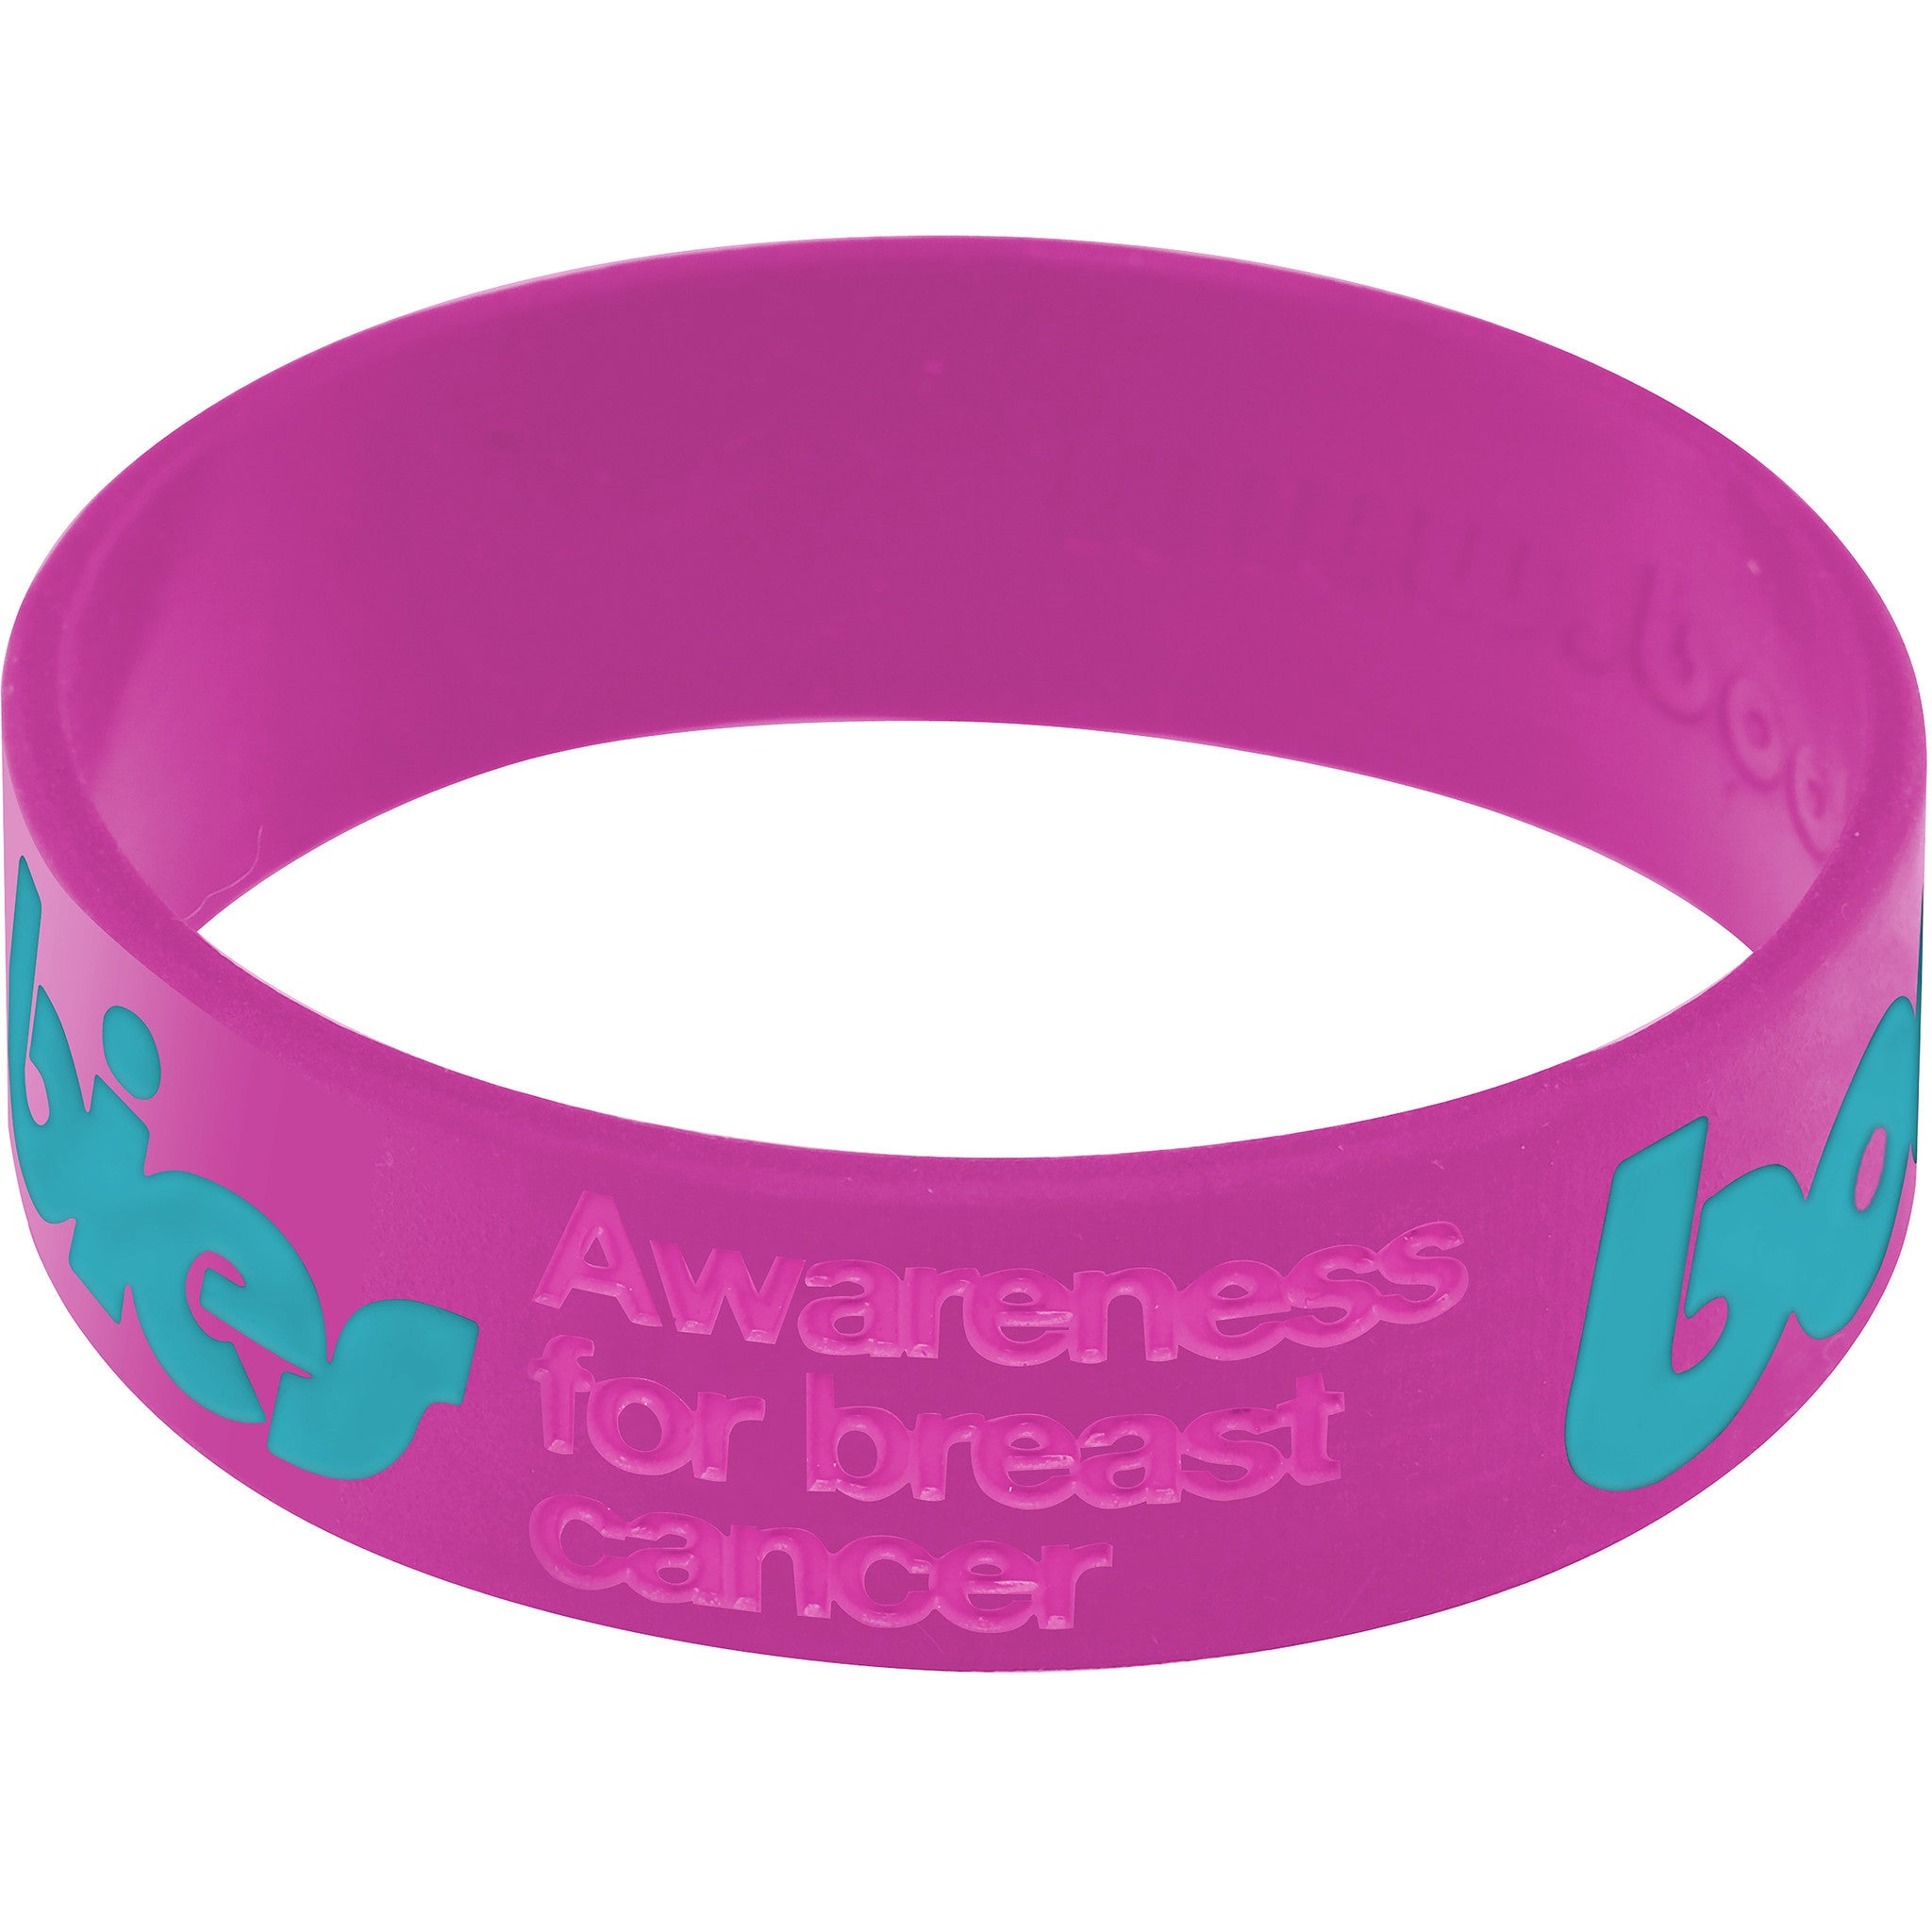 Purple Aqua Boobies Awareness for Breast Cancer Bracelet